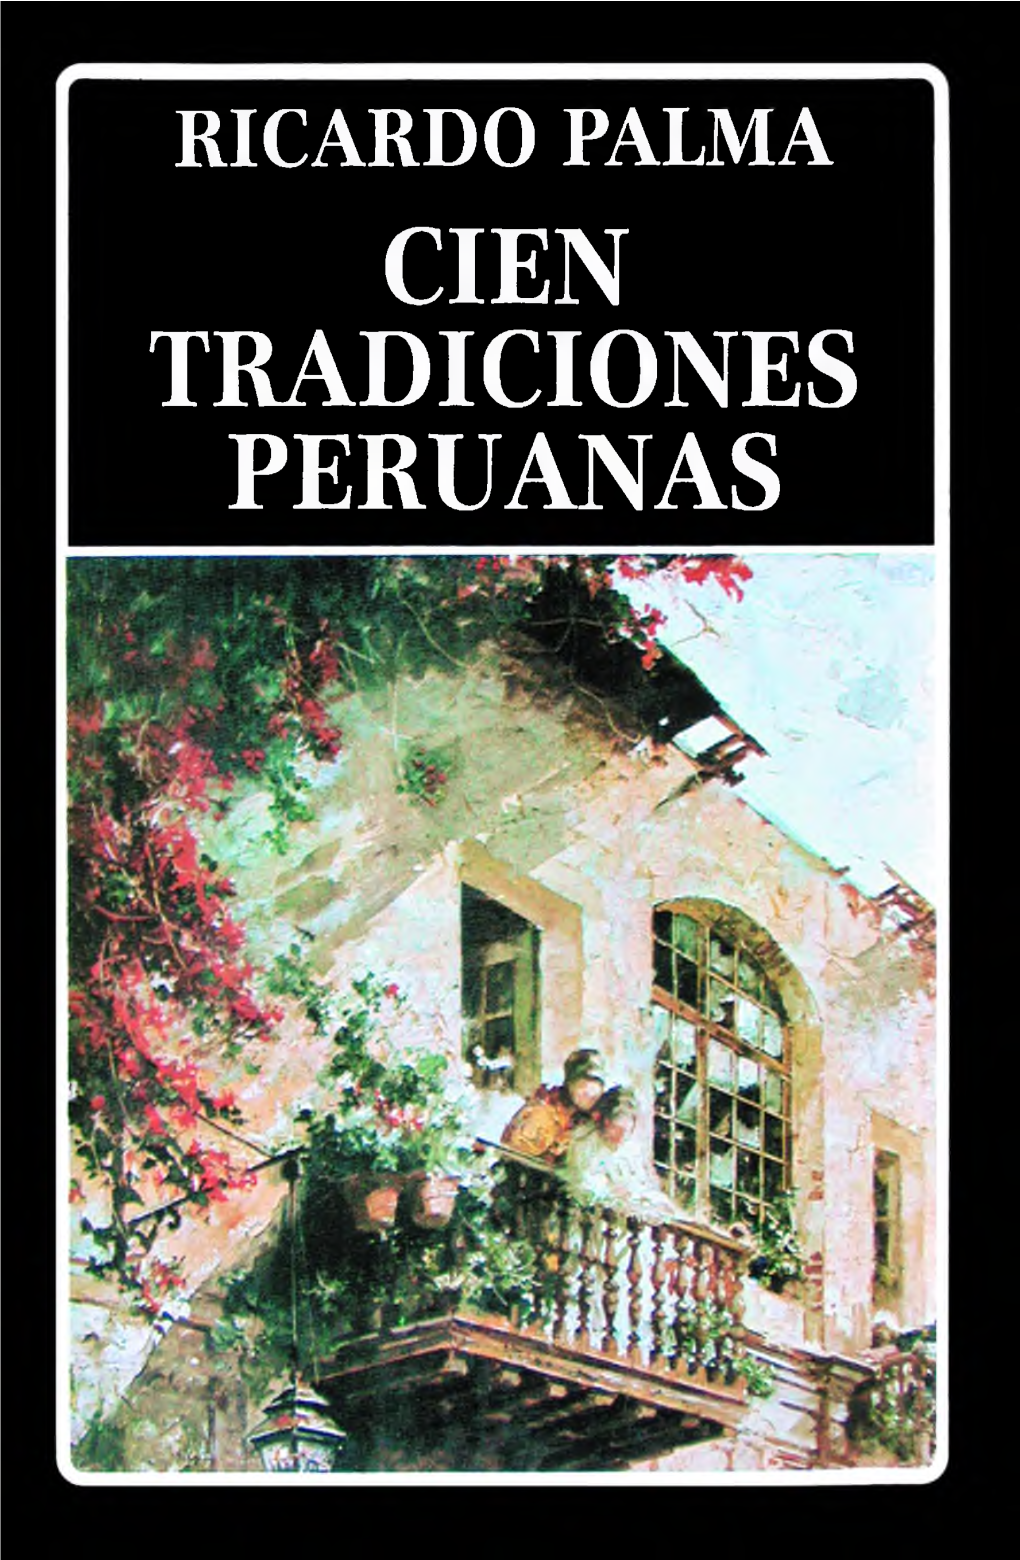 Palma, Ricardo – Cien Tradiciones Peruanas